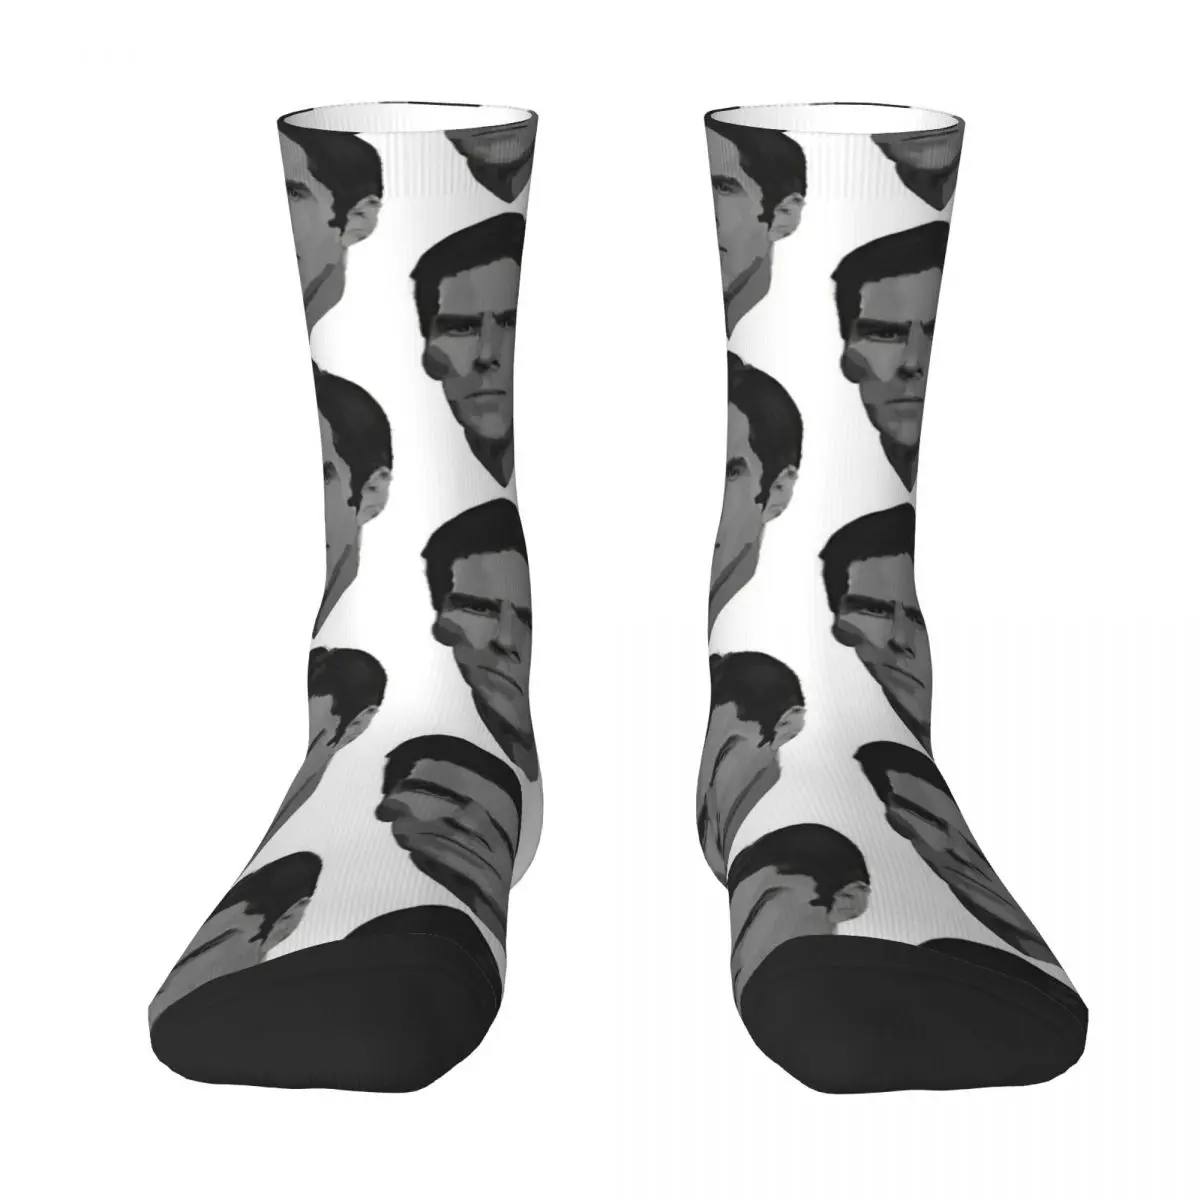 Aaron Hotchner Adult Socks Unisex socks,men Socks women Socks